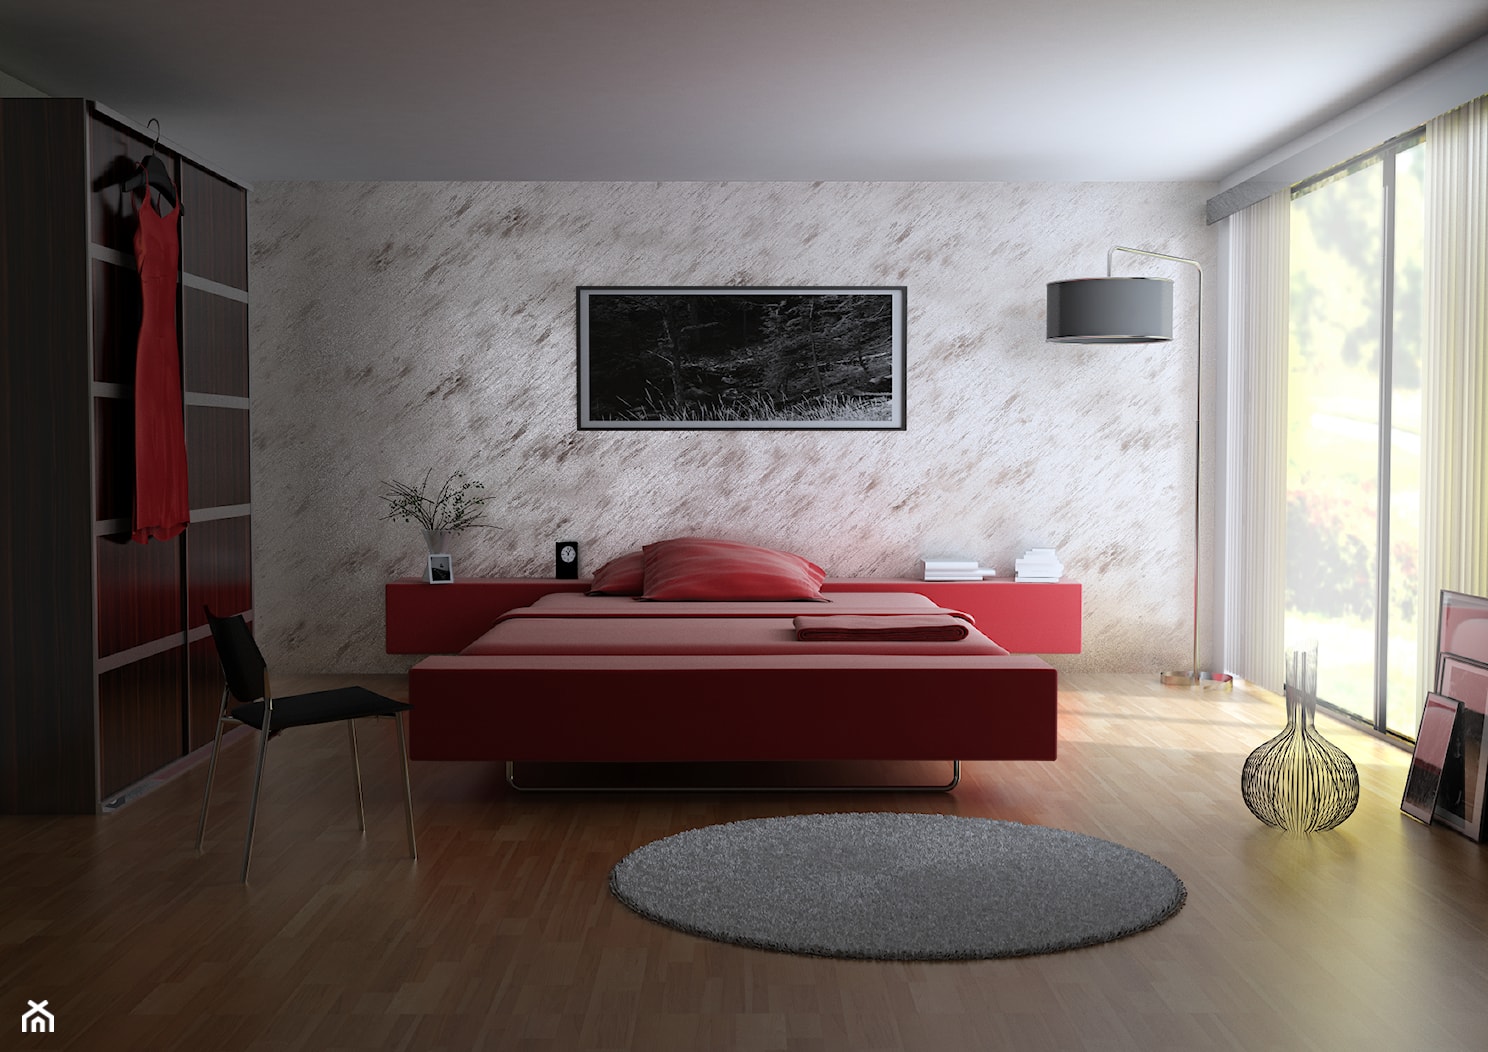 Farba o efekcie rosy - Sypialnia, styl nowoczesny - zdjęcie od Francesco GUARDI Collezione - Homebook